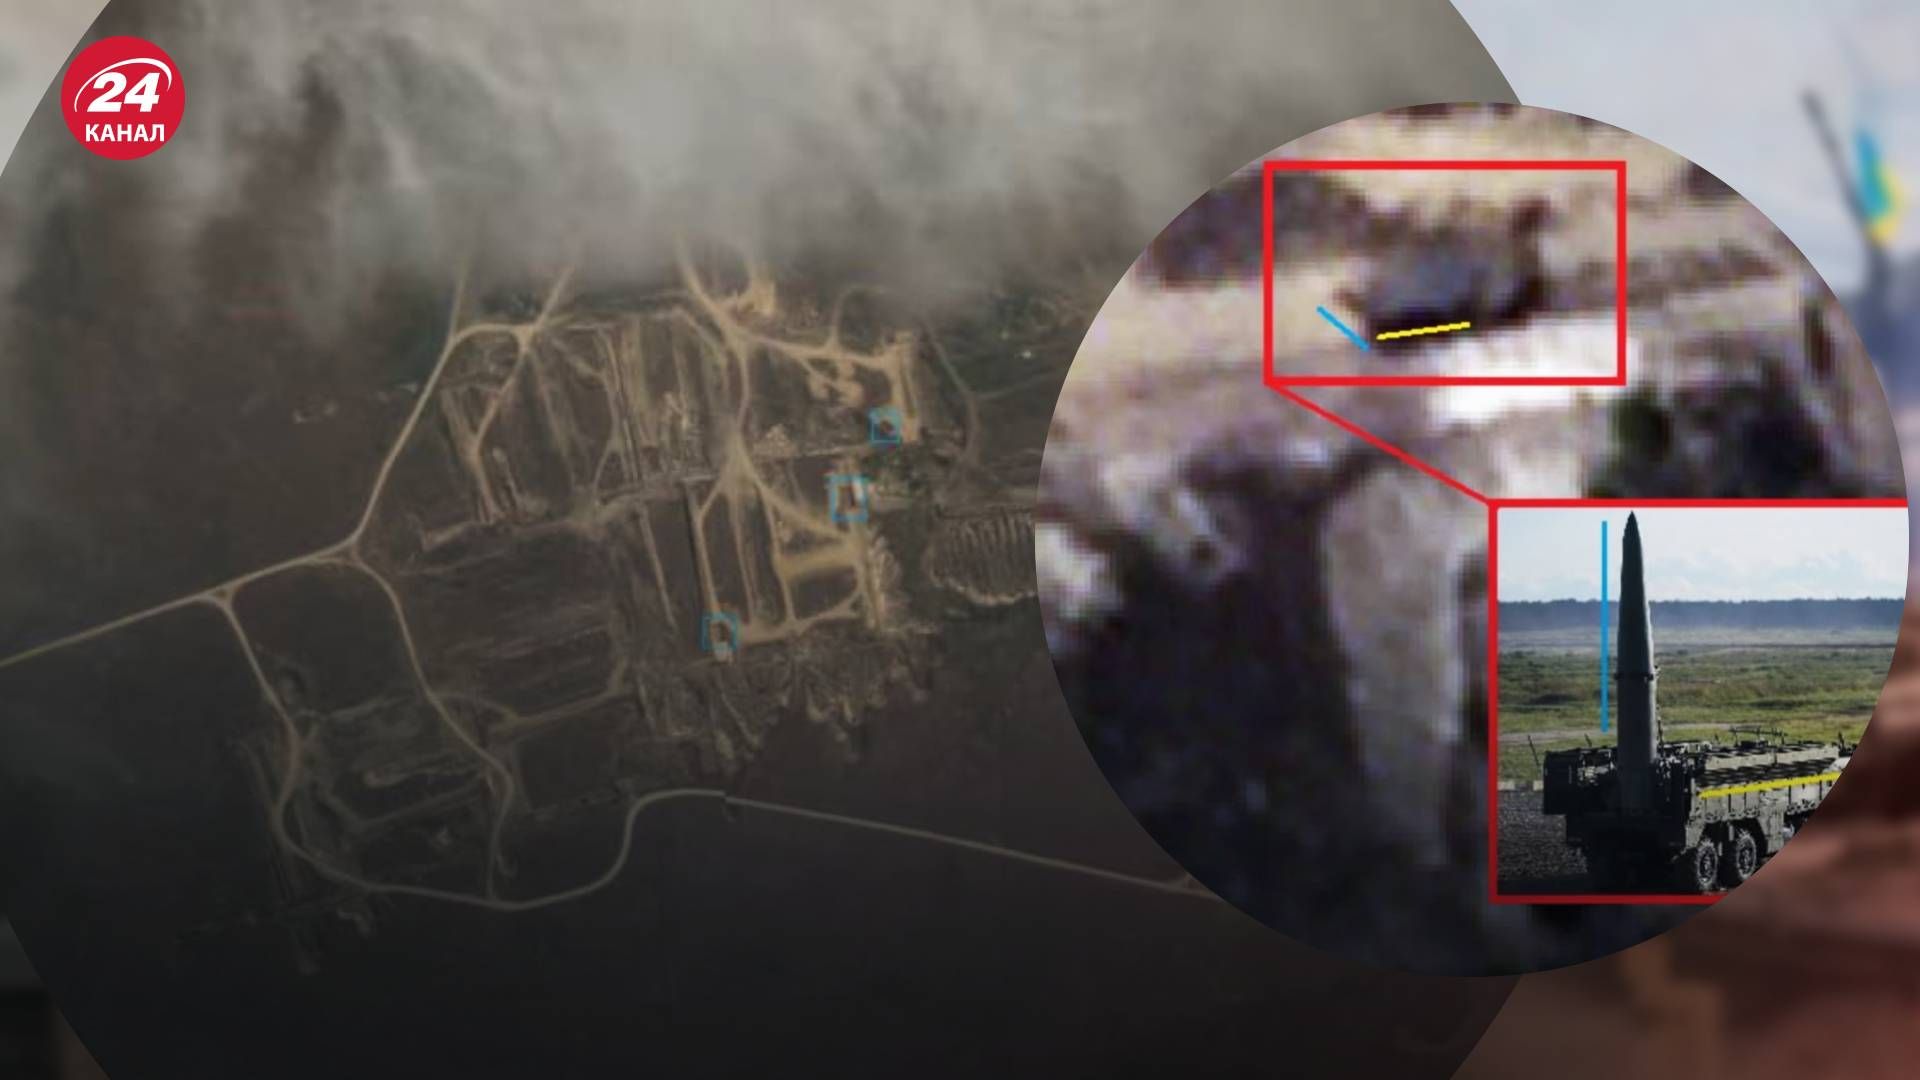 Спутниковые снимки показывают следы пожара на месте дислокации ракетных установок Искандер-М в Крыму - 24 Канал